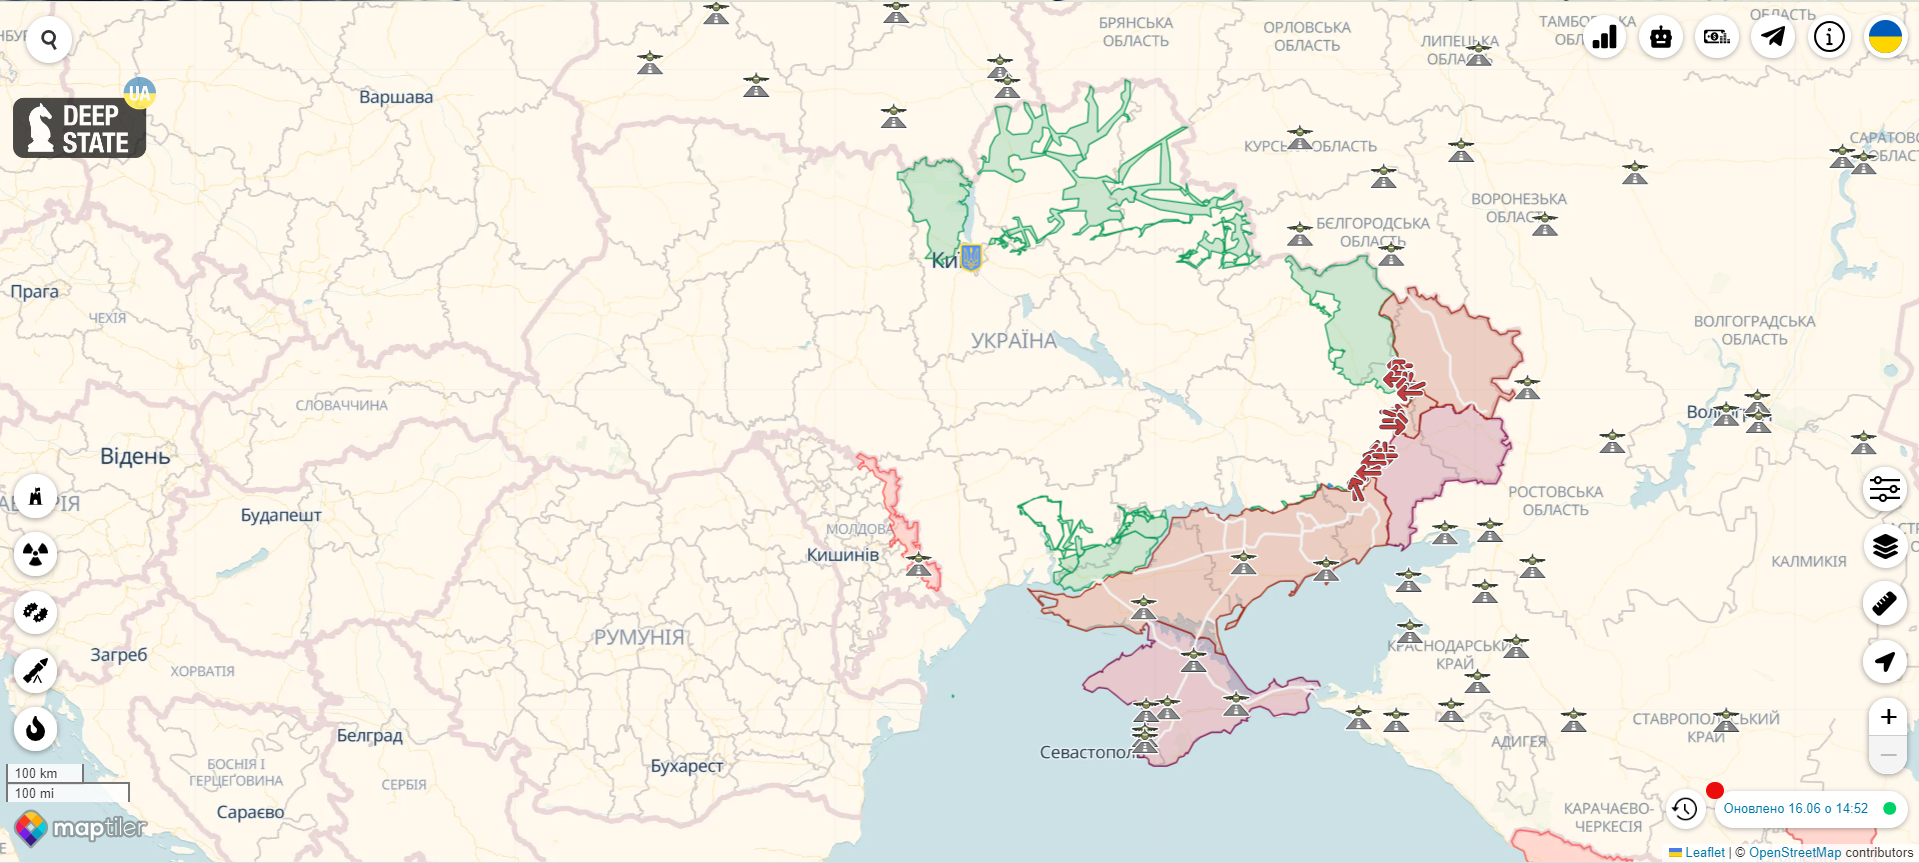 Понад п’ять тисяч метрів траншей за тиждень: Наєв розповів, як Україна укріплює північний кордон. Фото